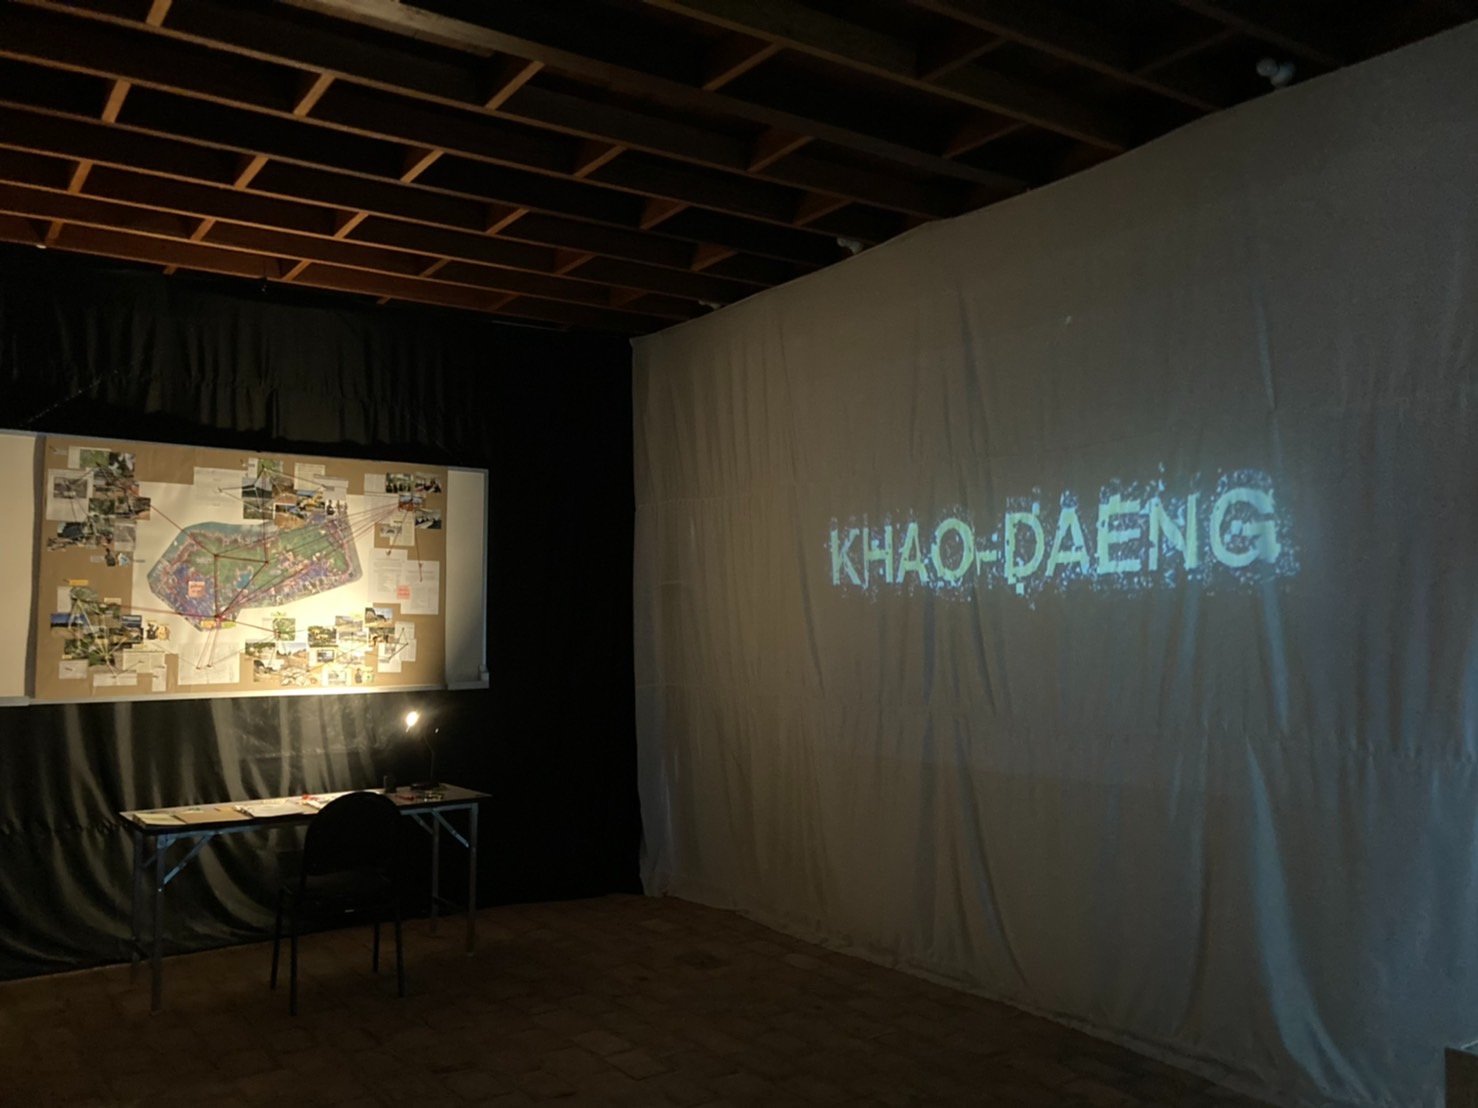 นิทรรศการ The story of khao daeng : คุณ เรา เขาแดง